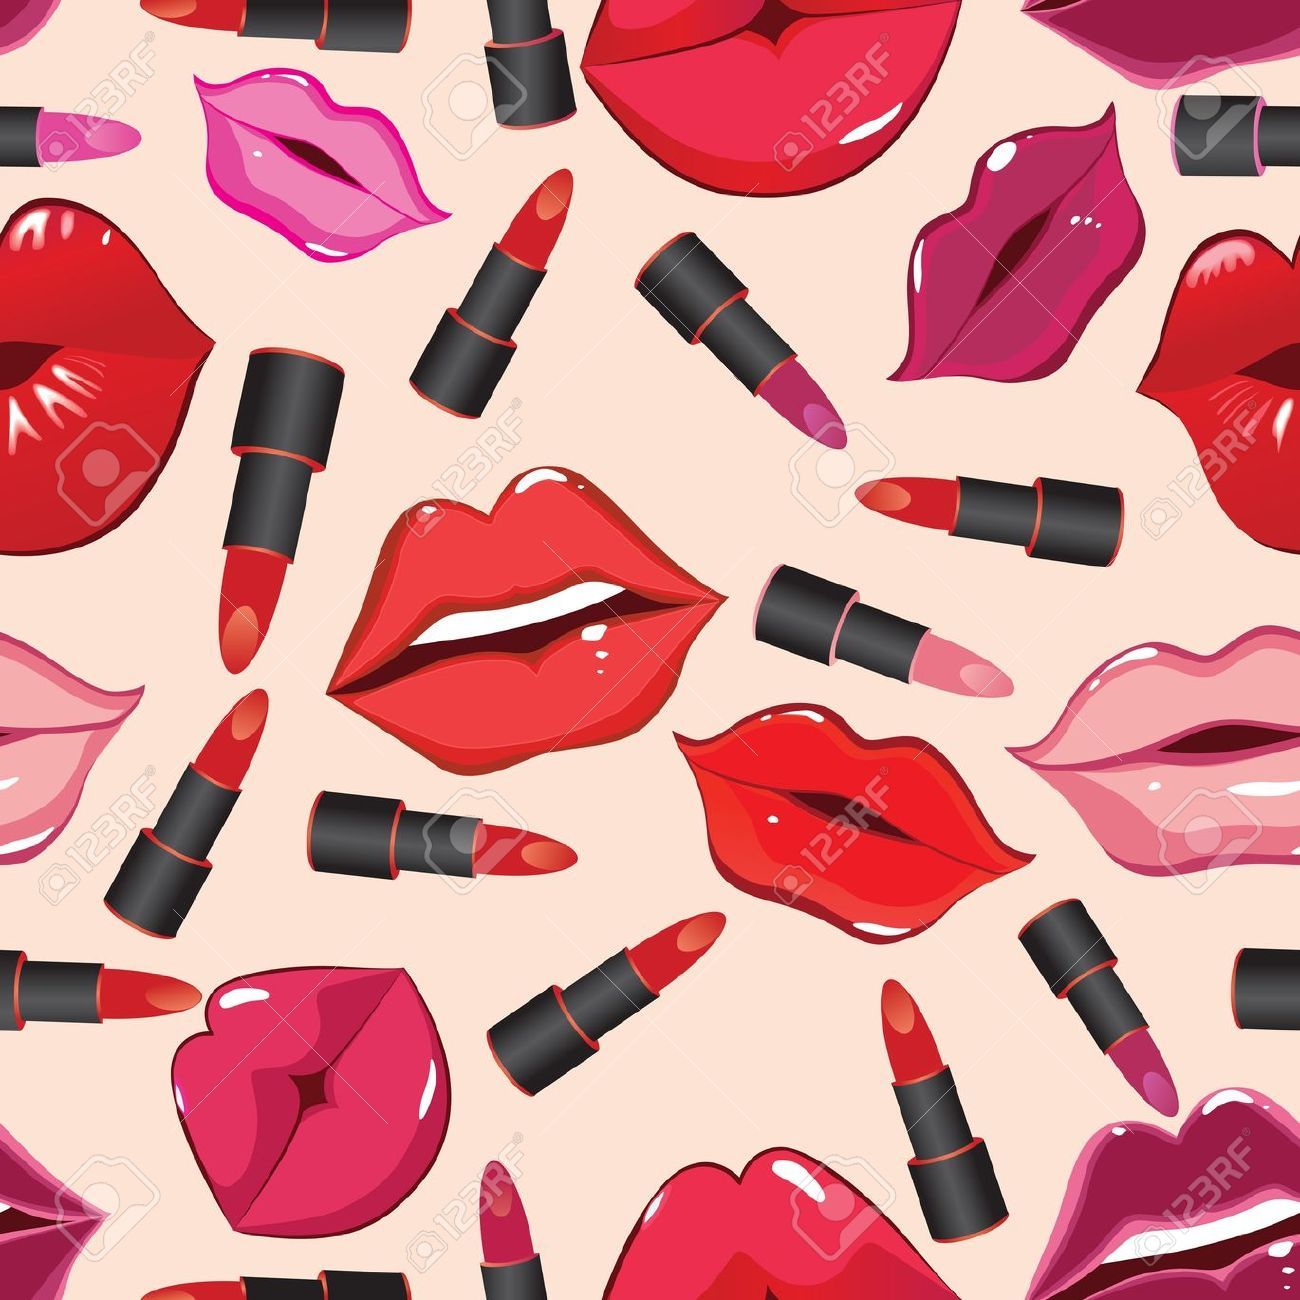 립스틱 벽지,분홍,말뿐인,화장품,매니큐어,립스틱